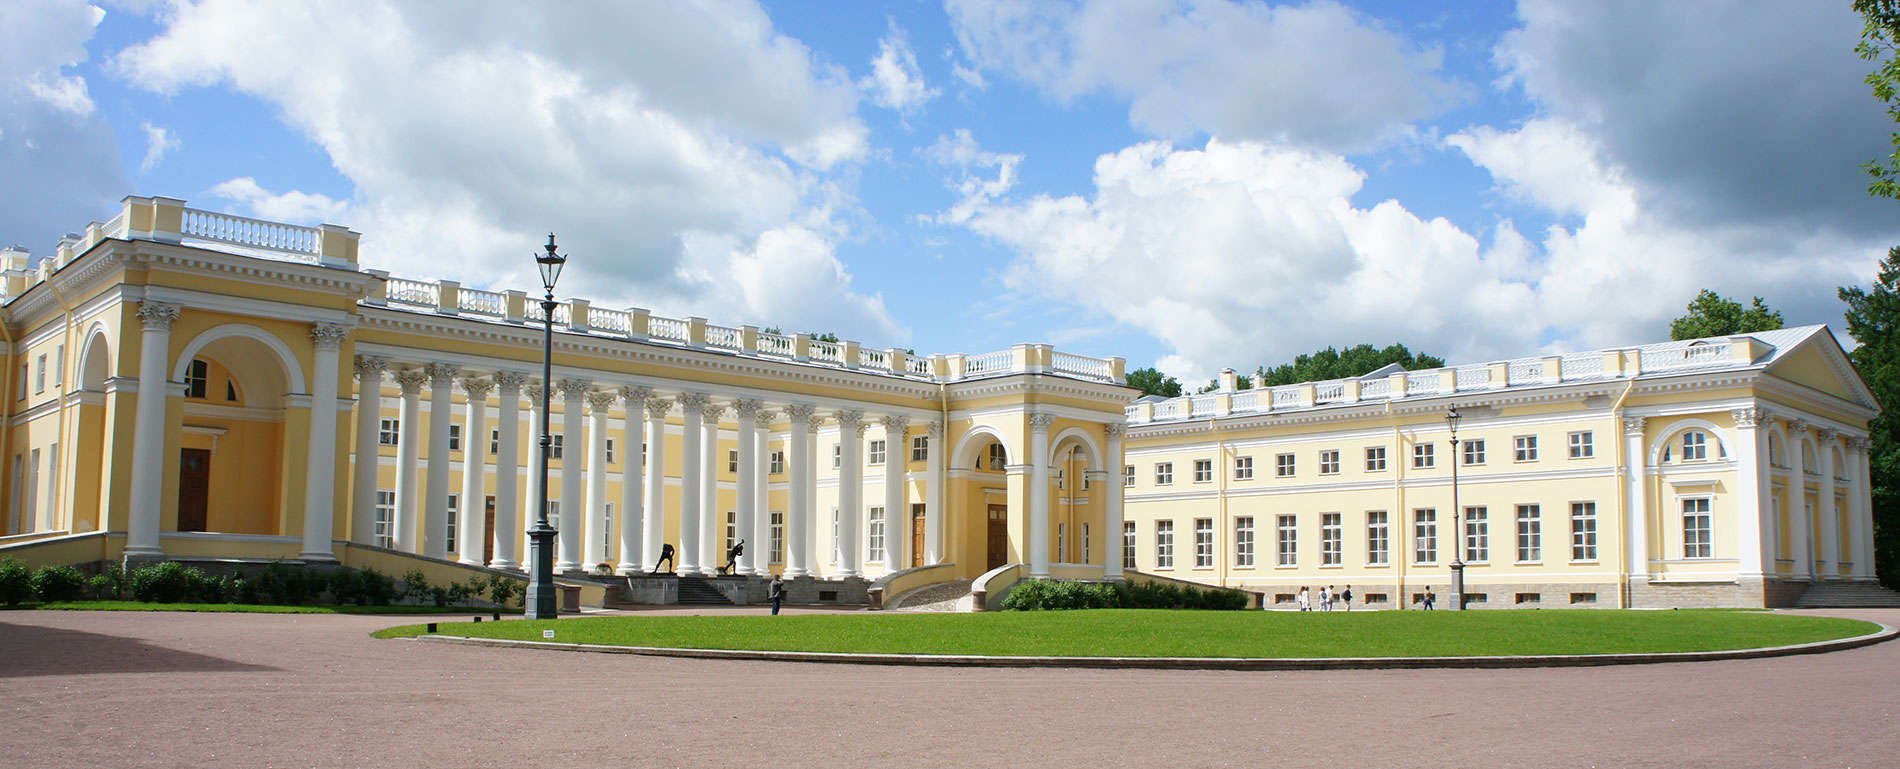 Александровский дворец в Санкт-Петербурге